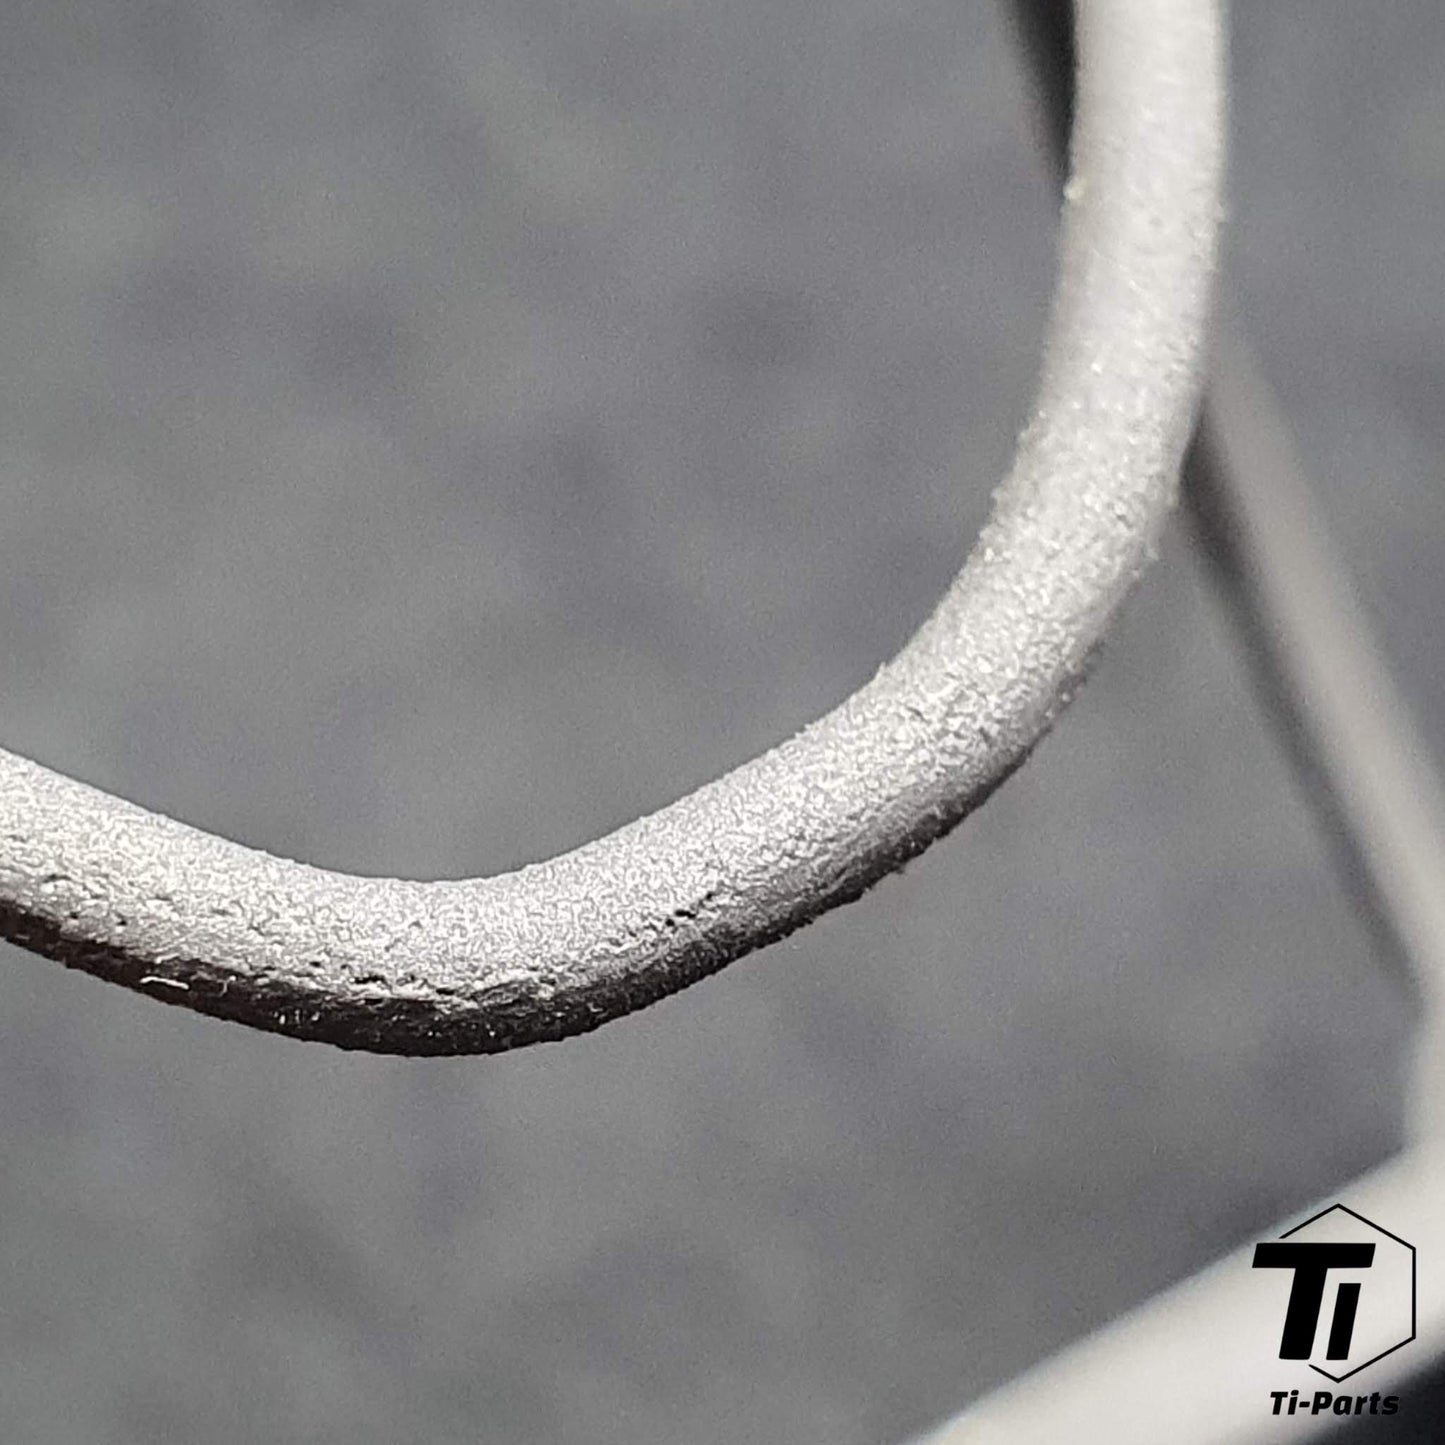 3D Print Titanium Ultra Light palackkalitka, 12,2 gramm | Moots Can Nicolas mászógép nélkülözhetetlen EXS kerékpáros Roadbike murvás MTB